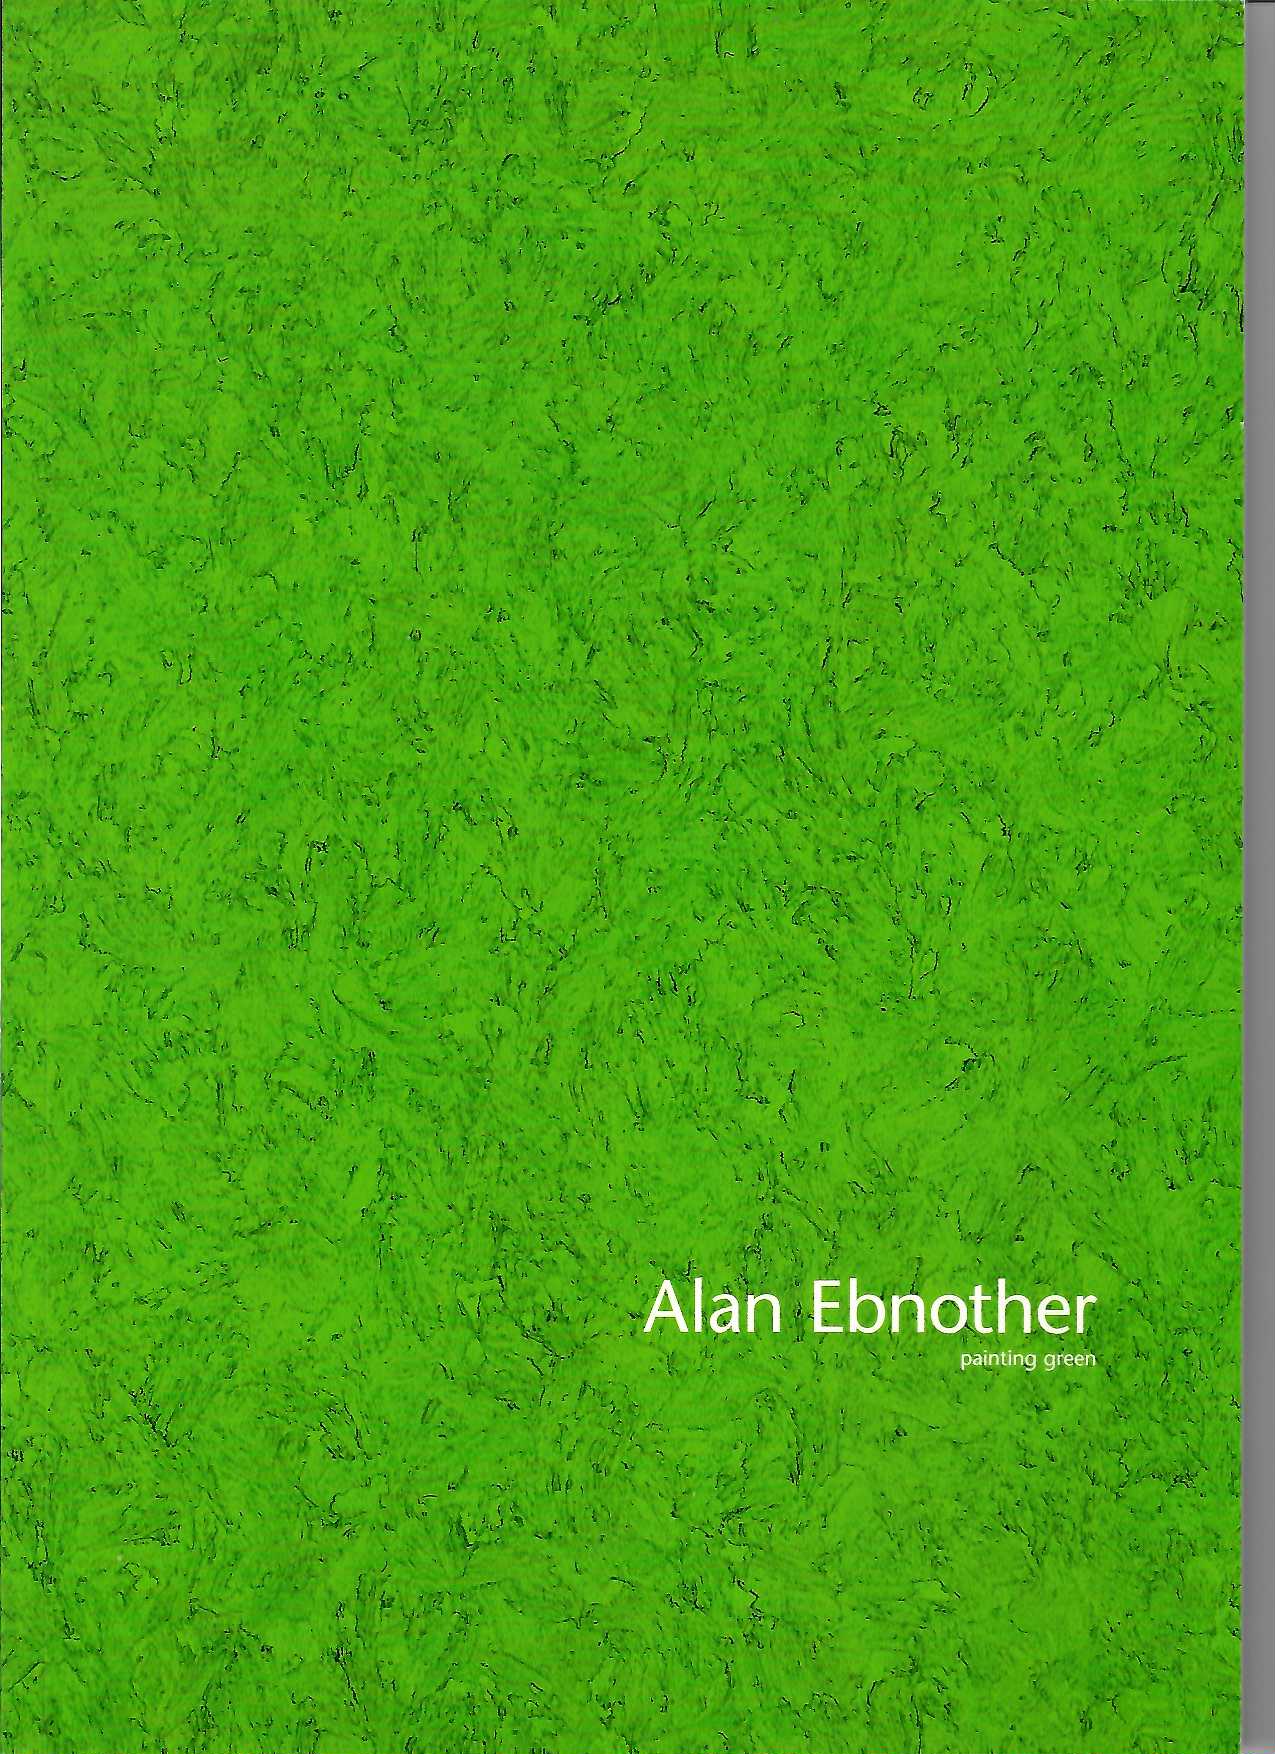 Katalog Alan Ebnother